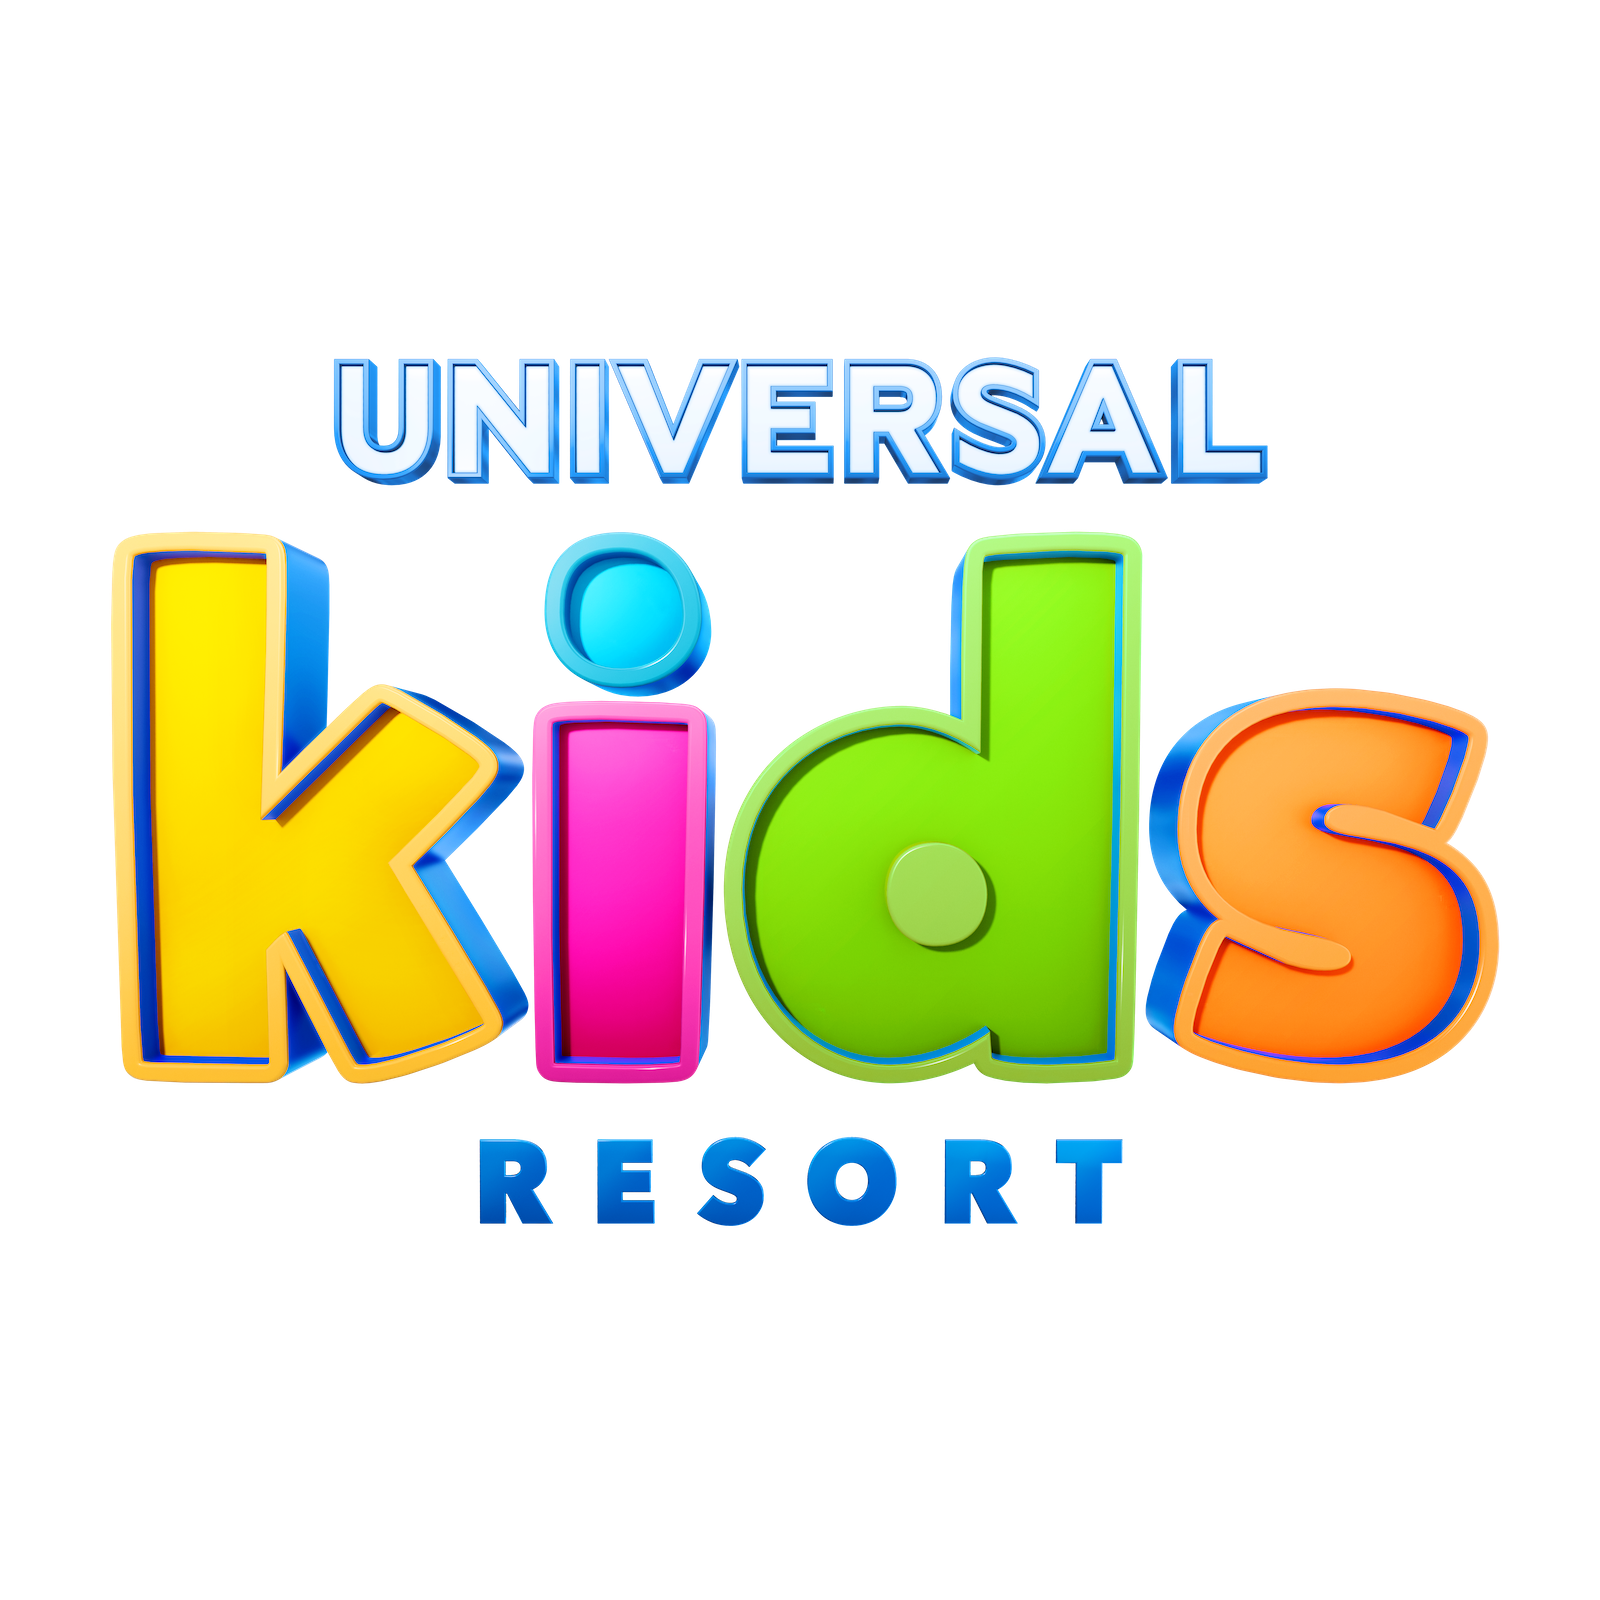 universal kids resort